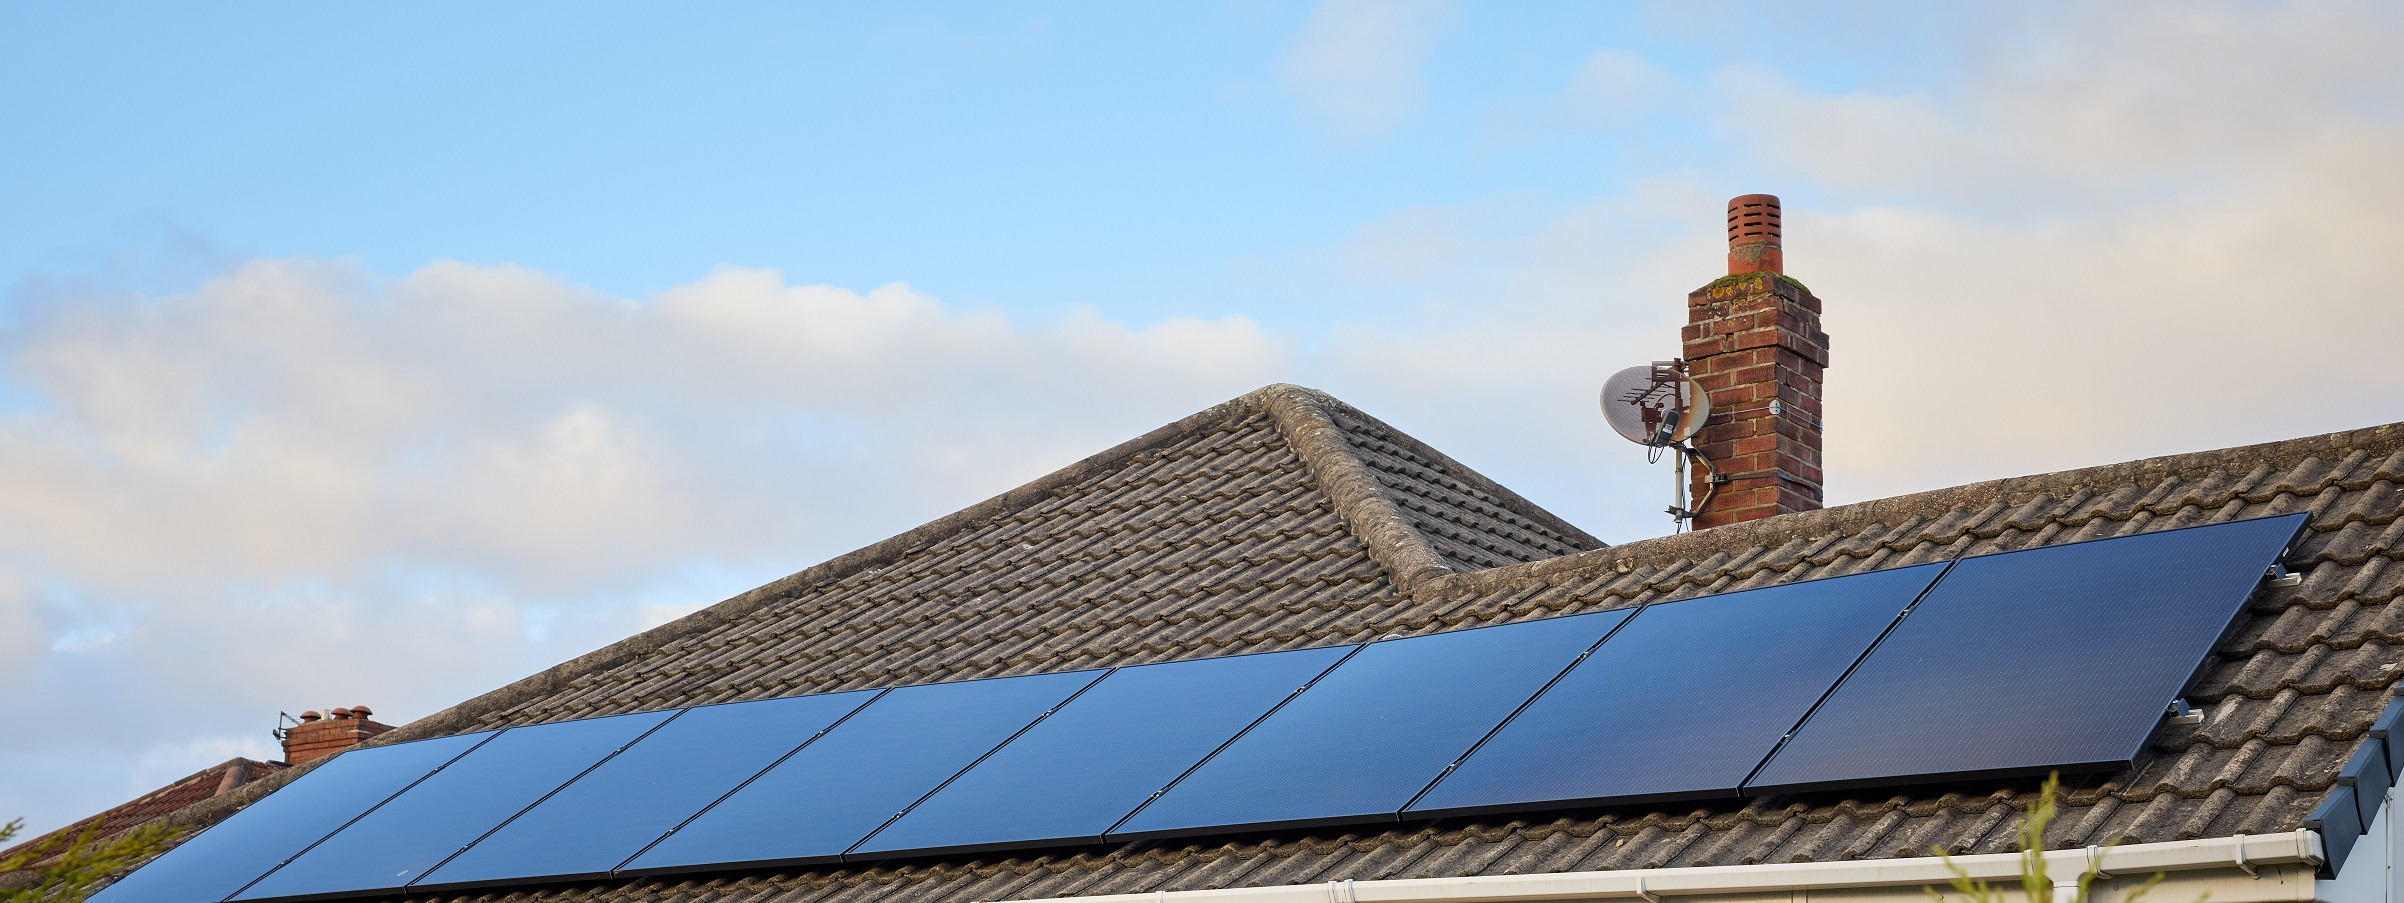 002 sf solar panel solarsaves tullett birdwell